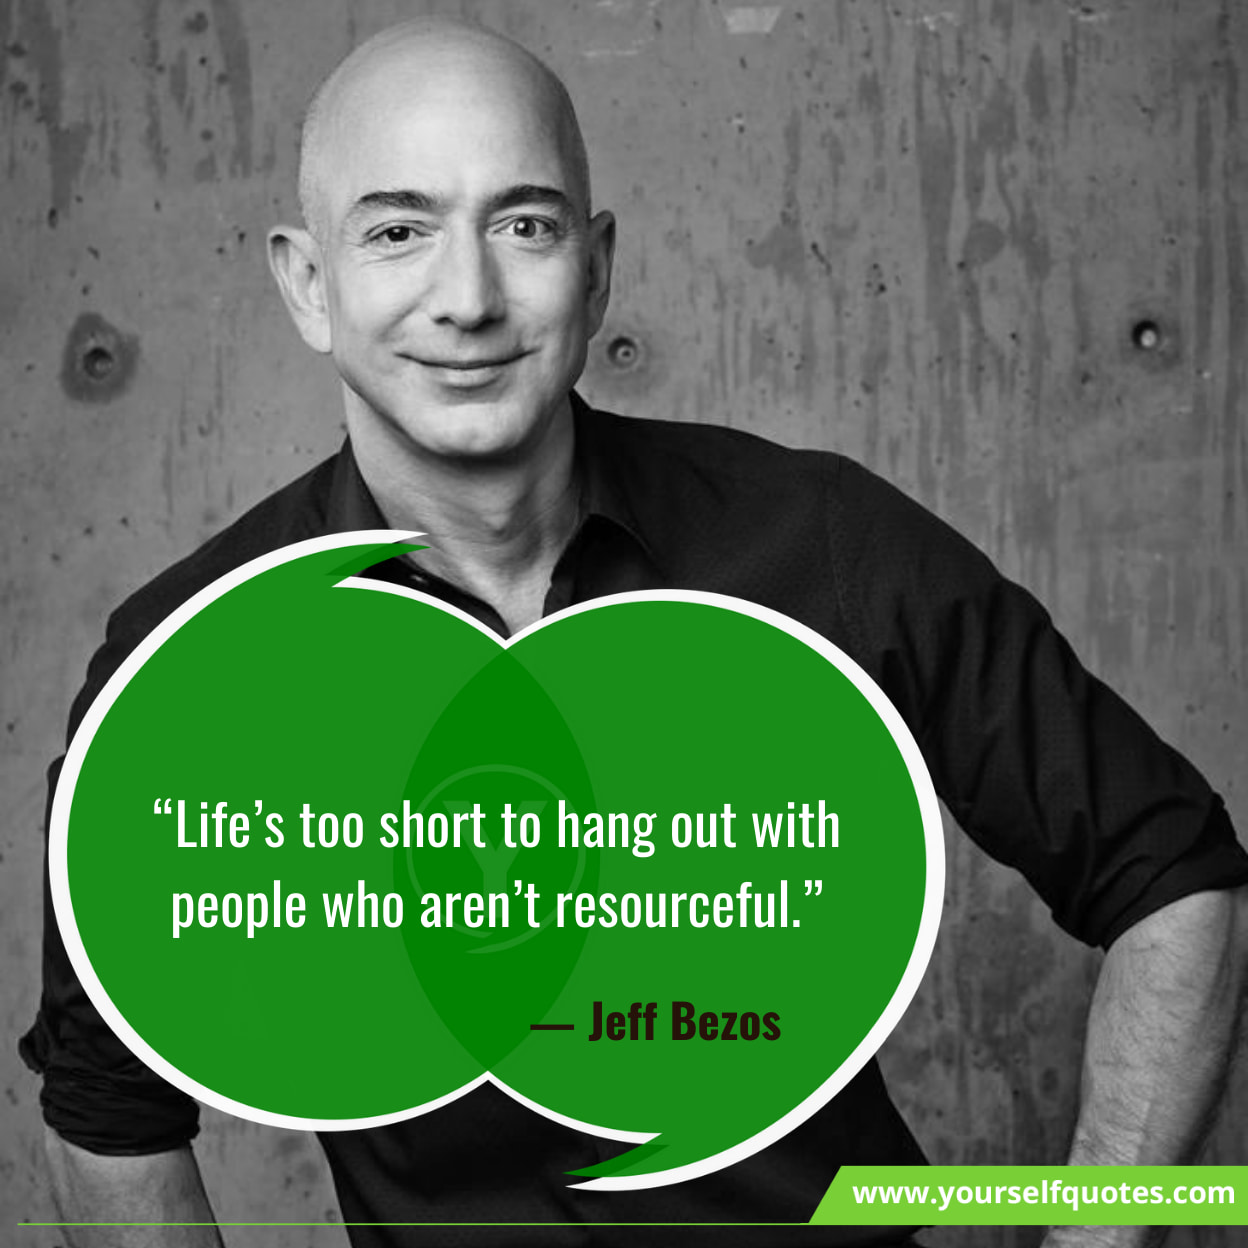 Jeff Bezos Quotes On Life